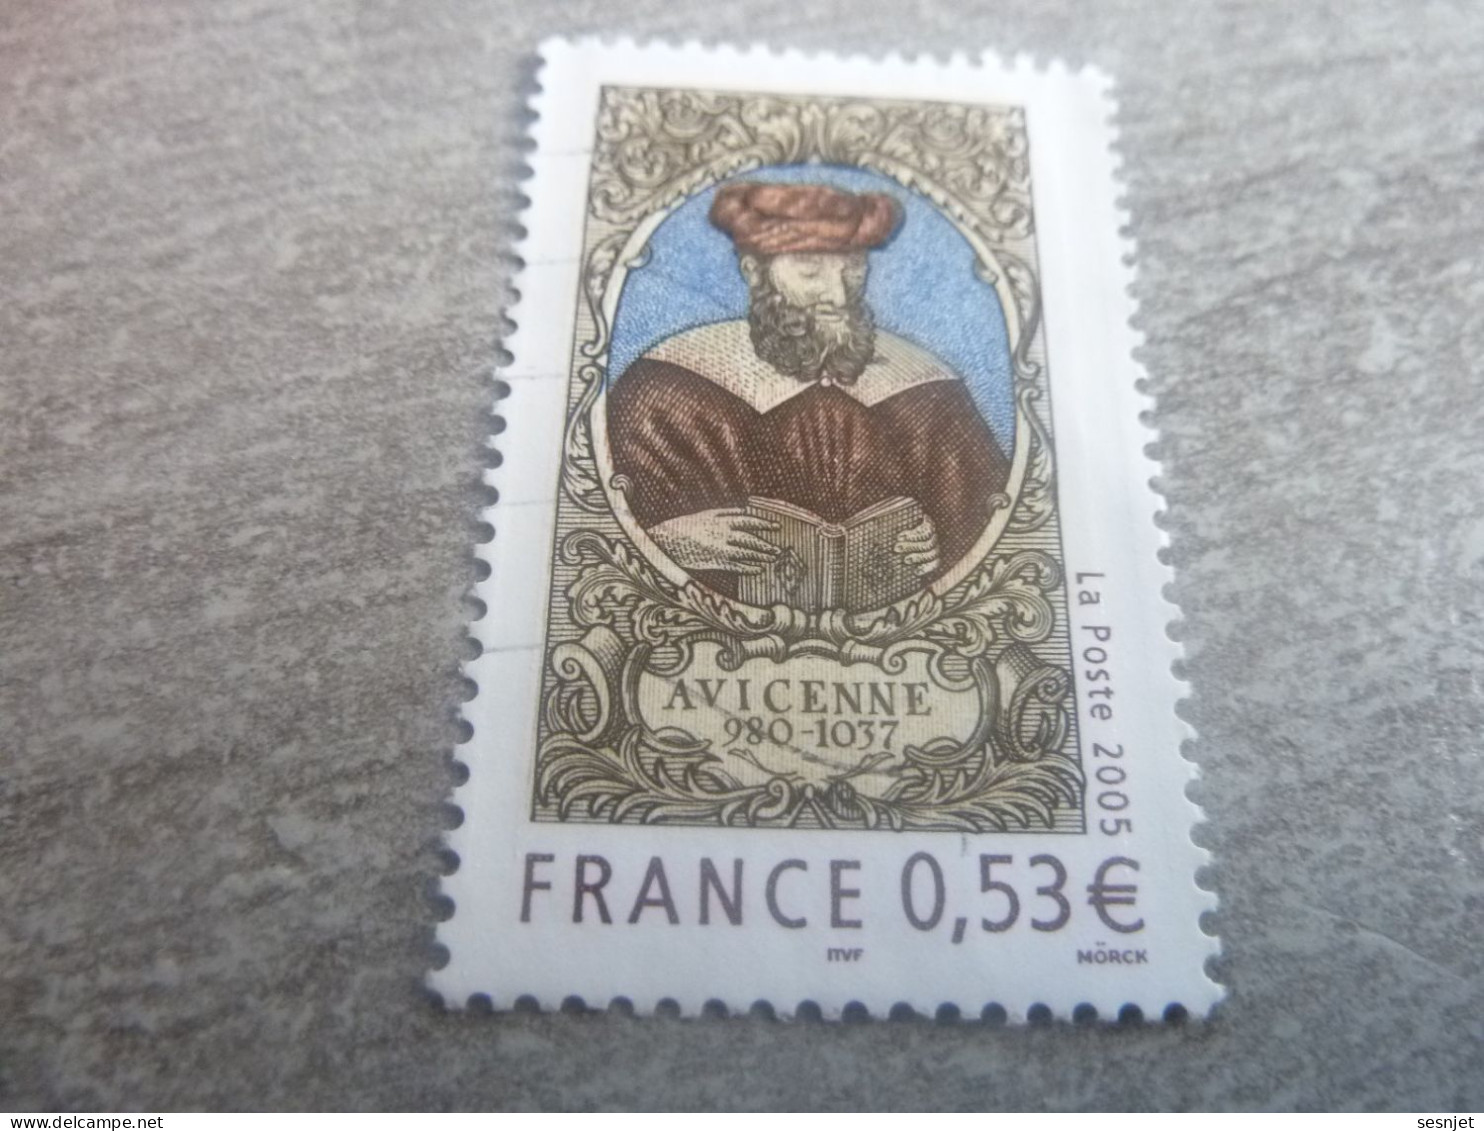 Avicenne (980-1037) Médecin Et Philosophe - 0.53 € - Yt 3852 - Multicolore - Oblitéré - Année 2005 - - Used Stamps